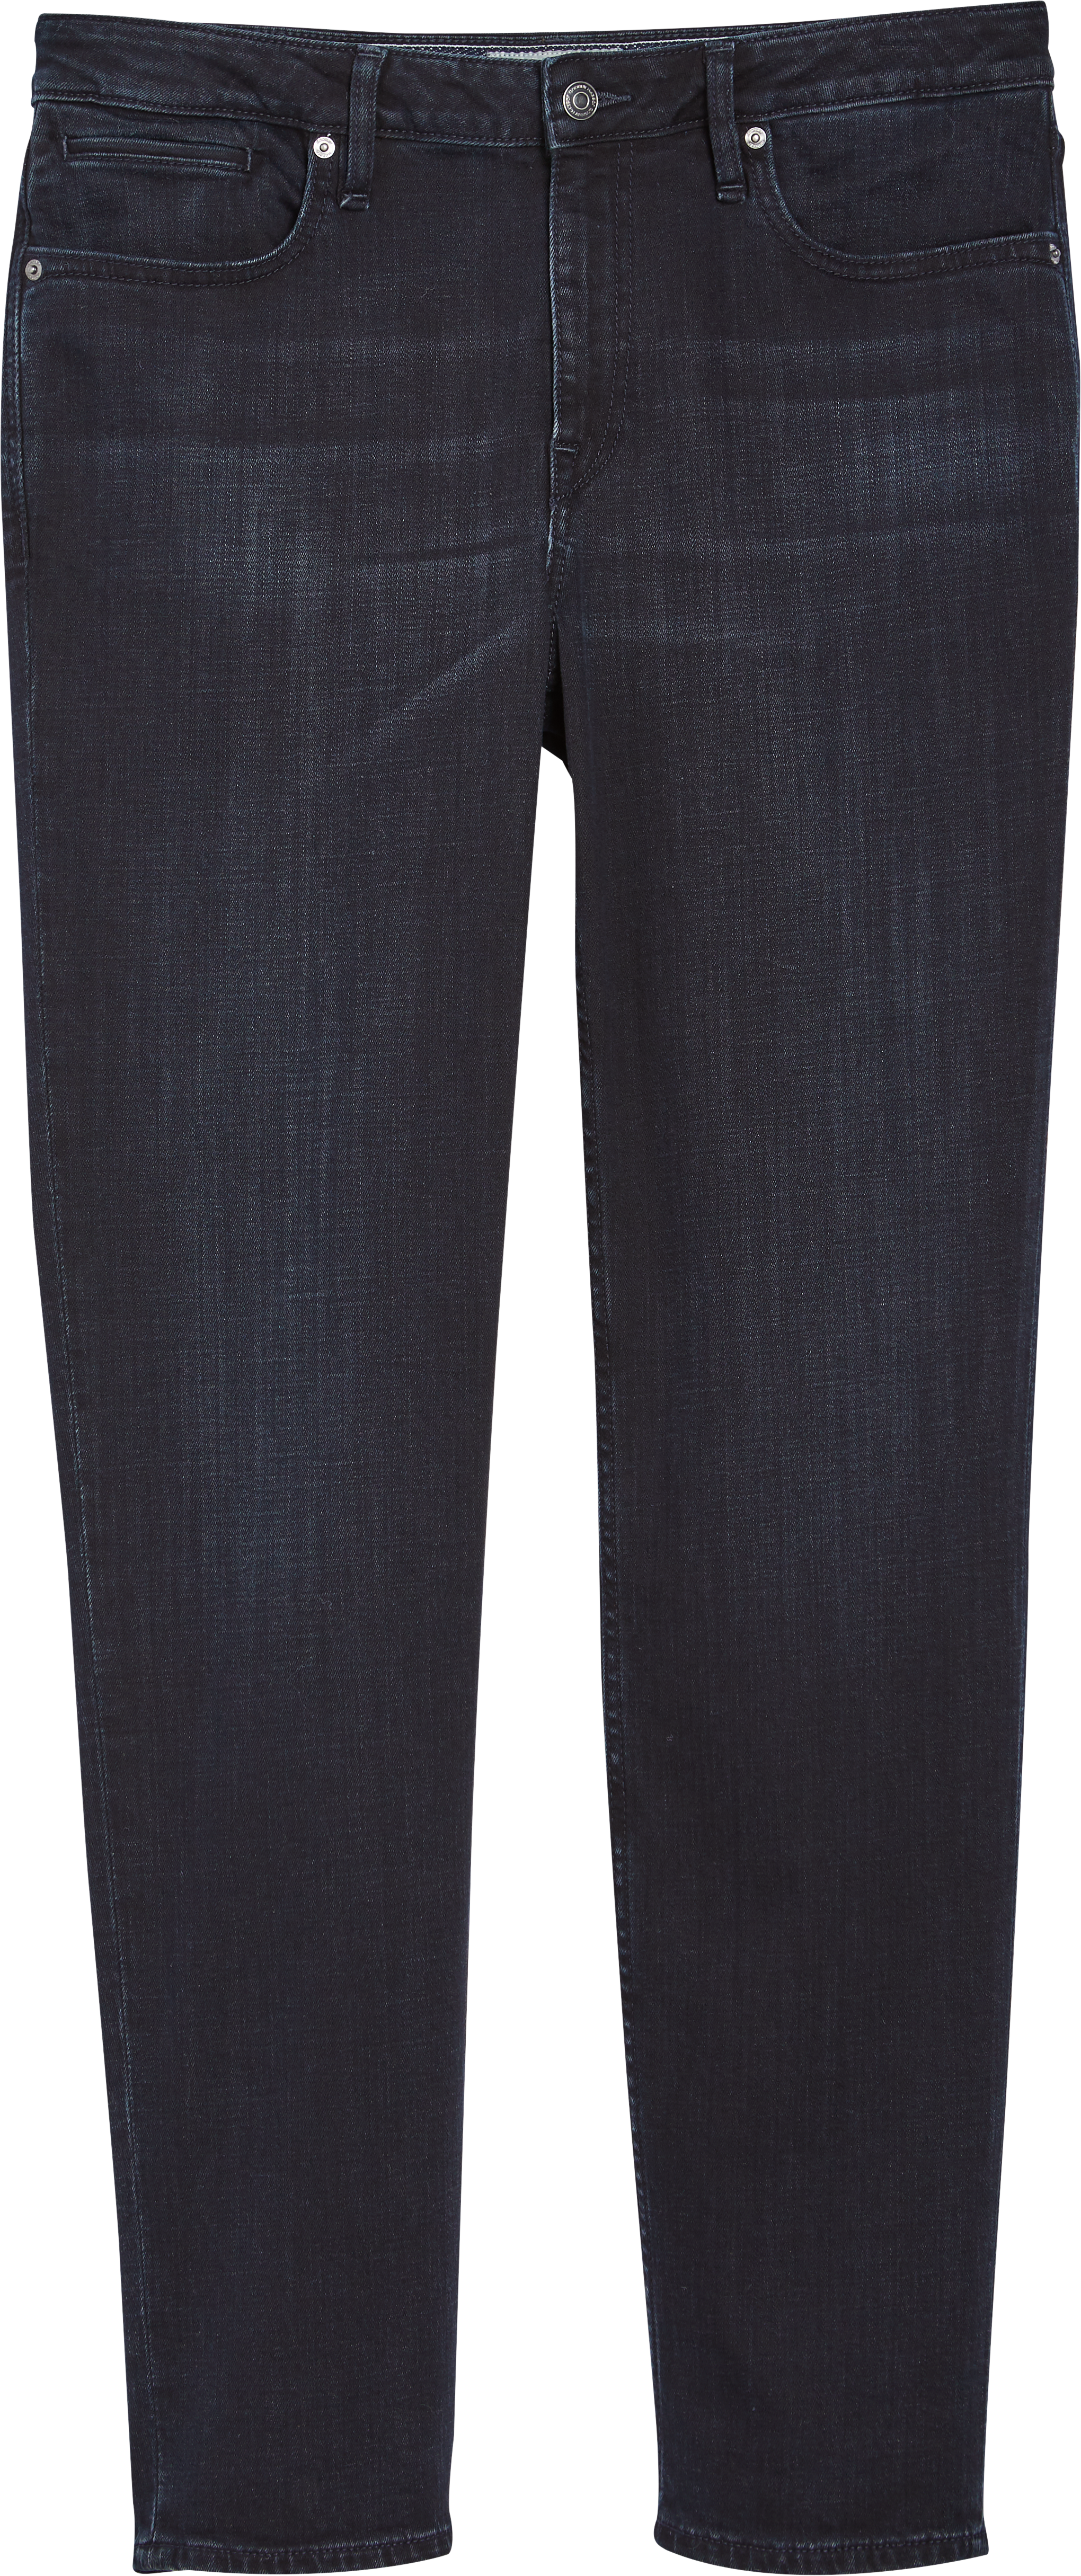 Joseph Abboud Derry Black Straight leg Jeans - Men's Pants | Men's ...